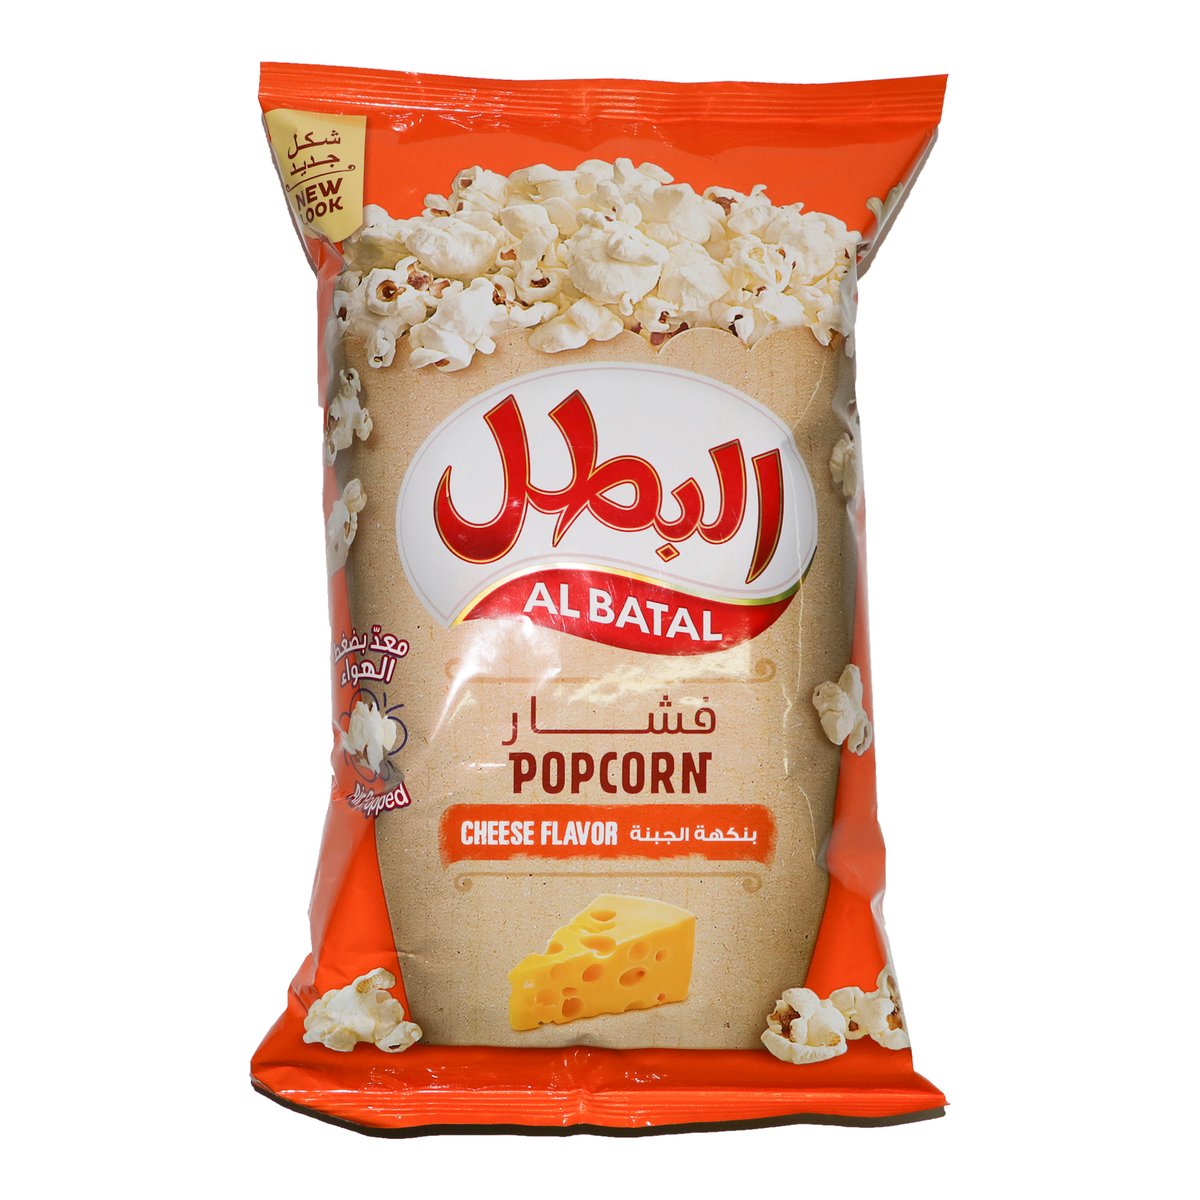 اشتري قم بشراء البطل فشار بالجبنة 90 جم Online at Best Price من الموقع - من لولو هايبر ماركت Pop Corn في السعودية